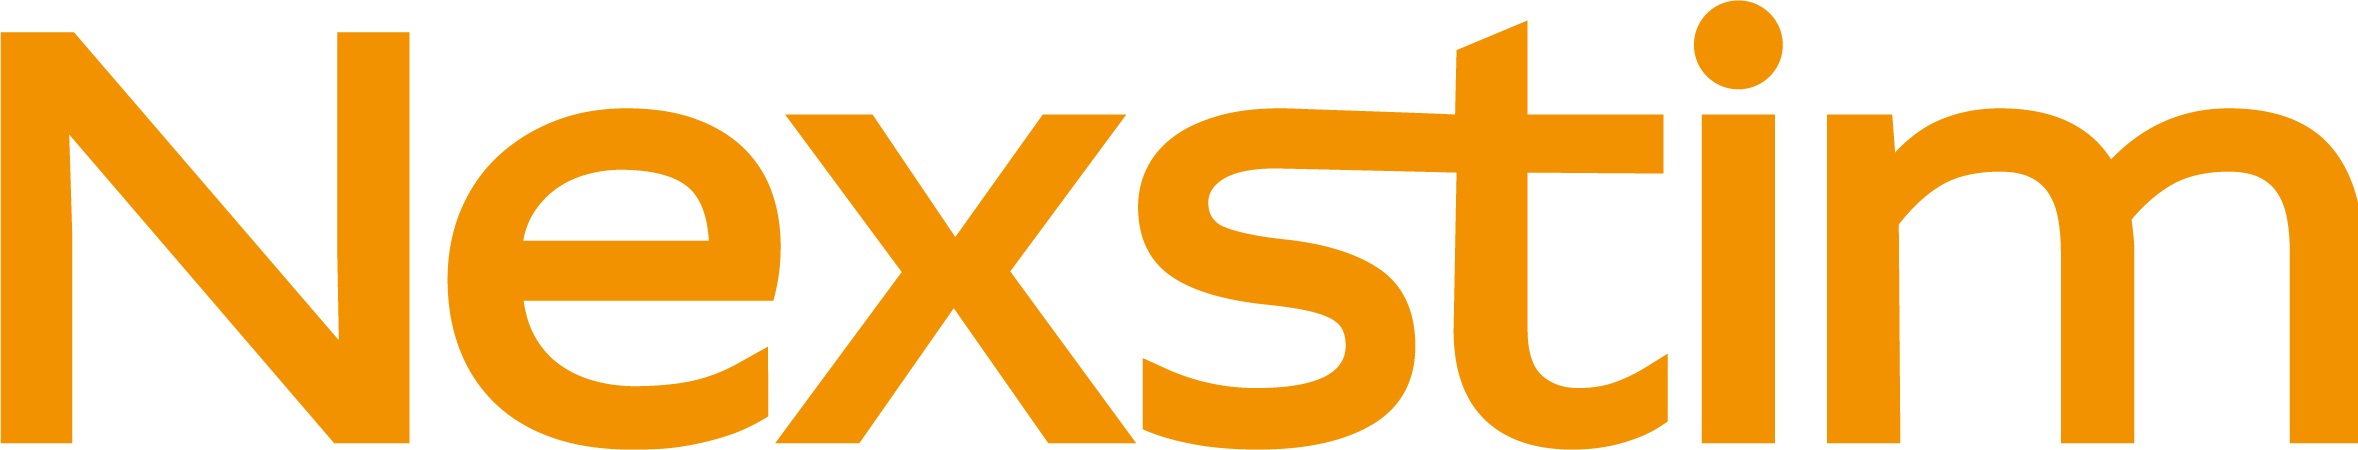 Nexstim Logotype 2018 RGB